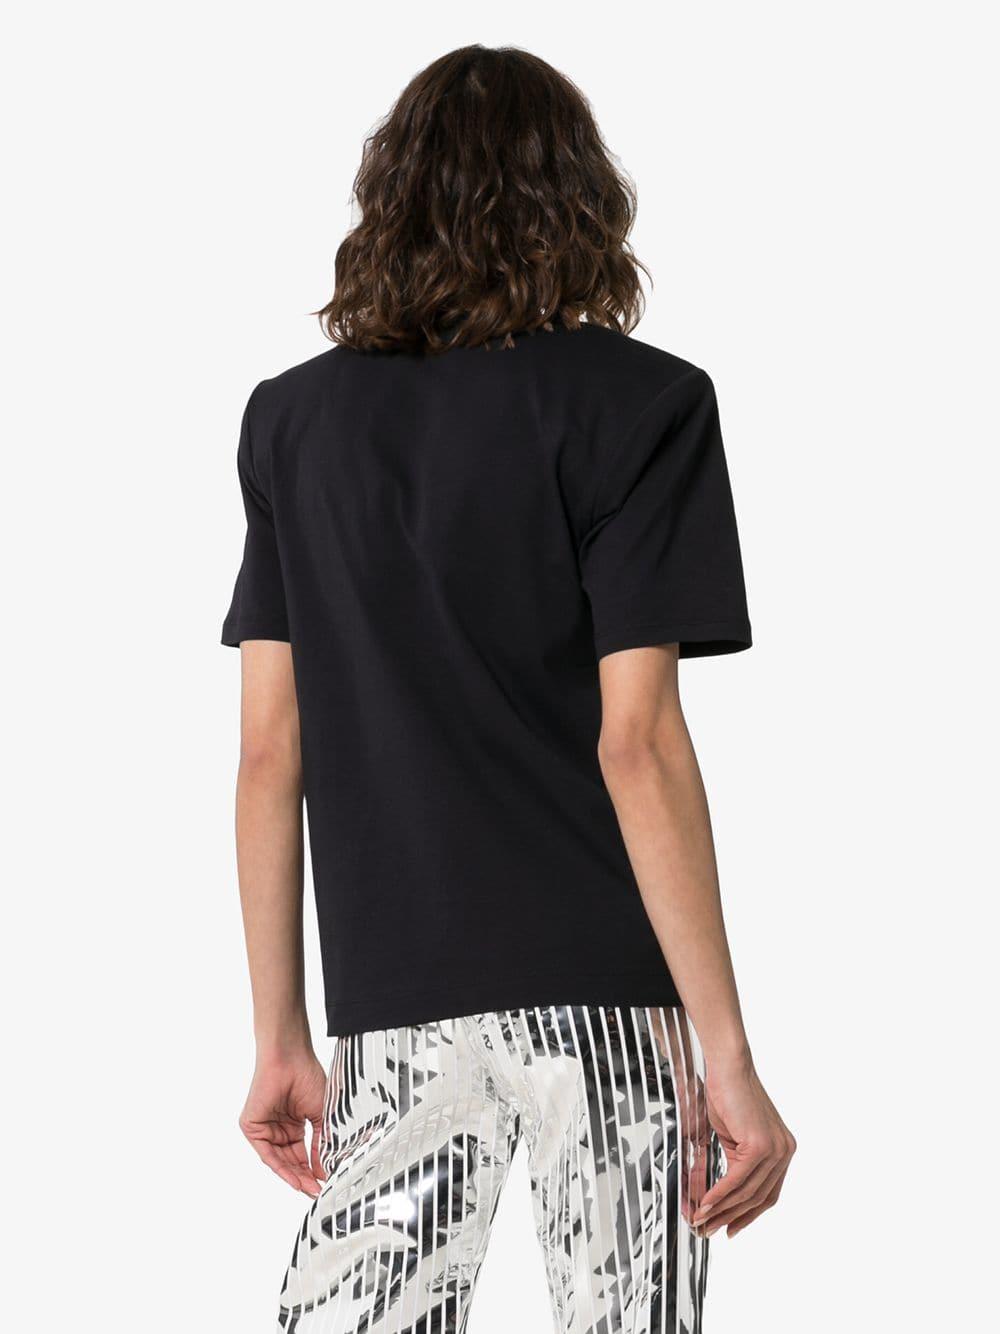 Dries Van Noten Hanson Padded Shoulder Cotton T-shirt in Black - Lyst